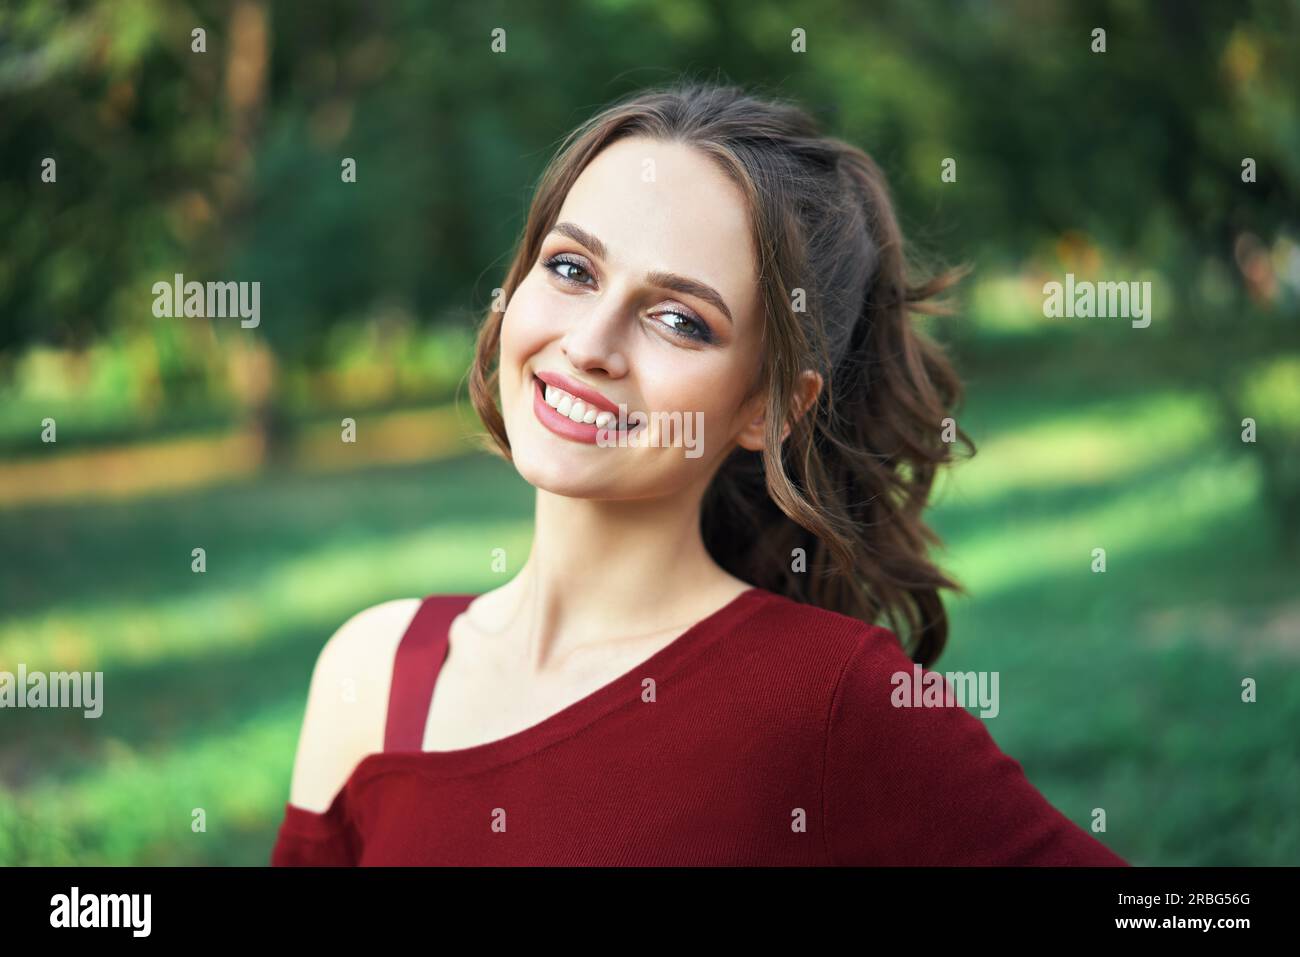 Portrait de la jeune belle femme à l'extérieur sur fond vert de la nature estivale. Concept de beauté féminine Banque D'Images